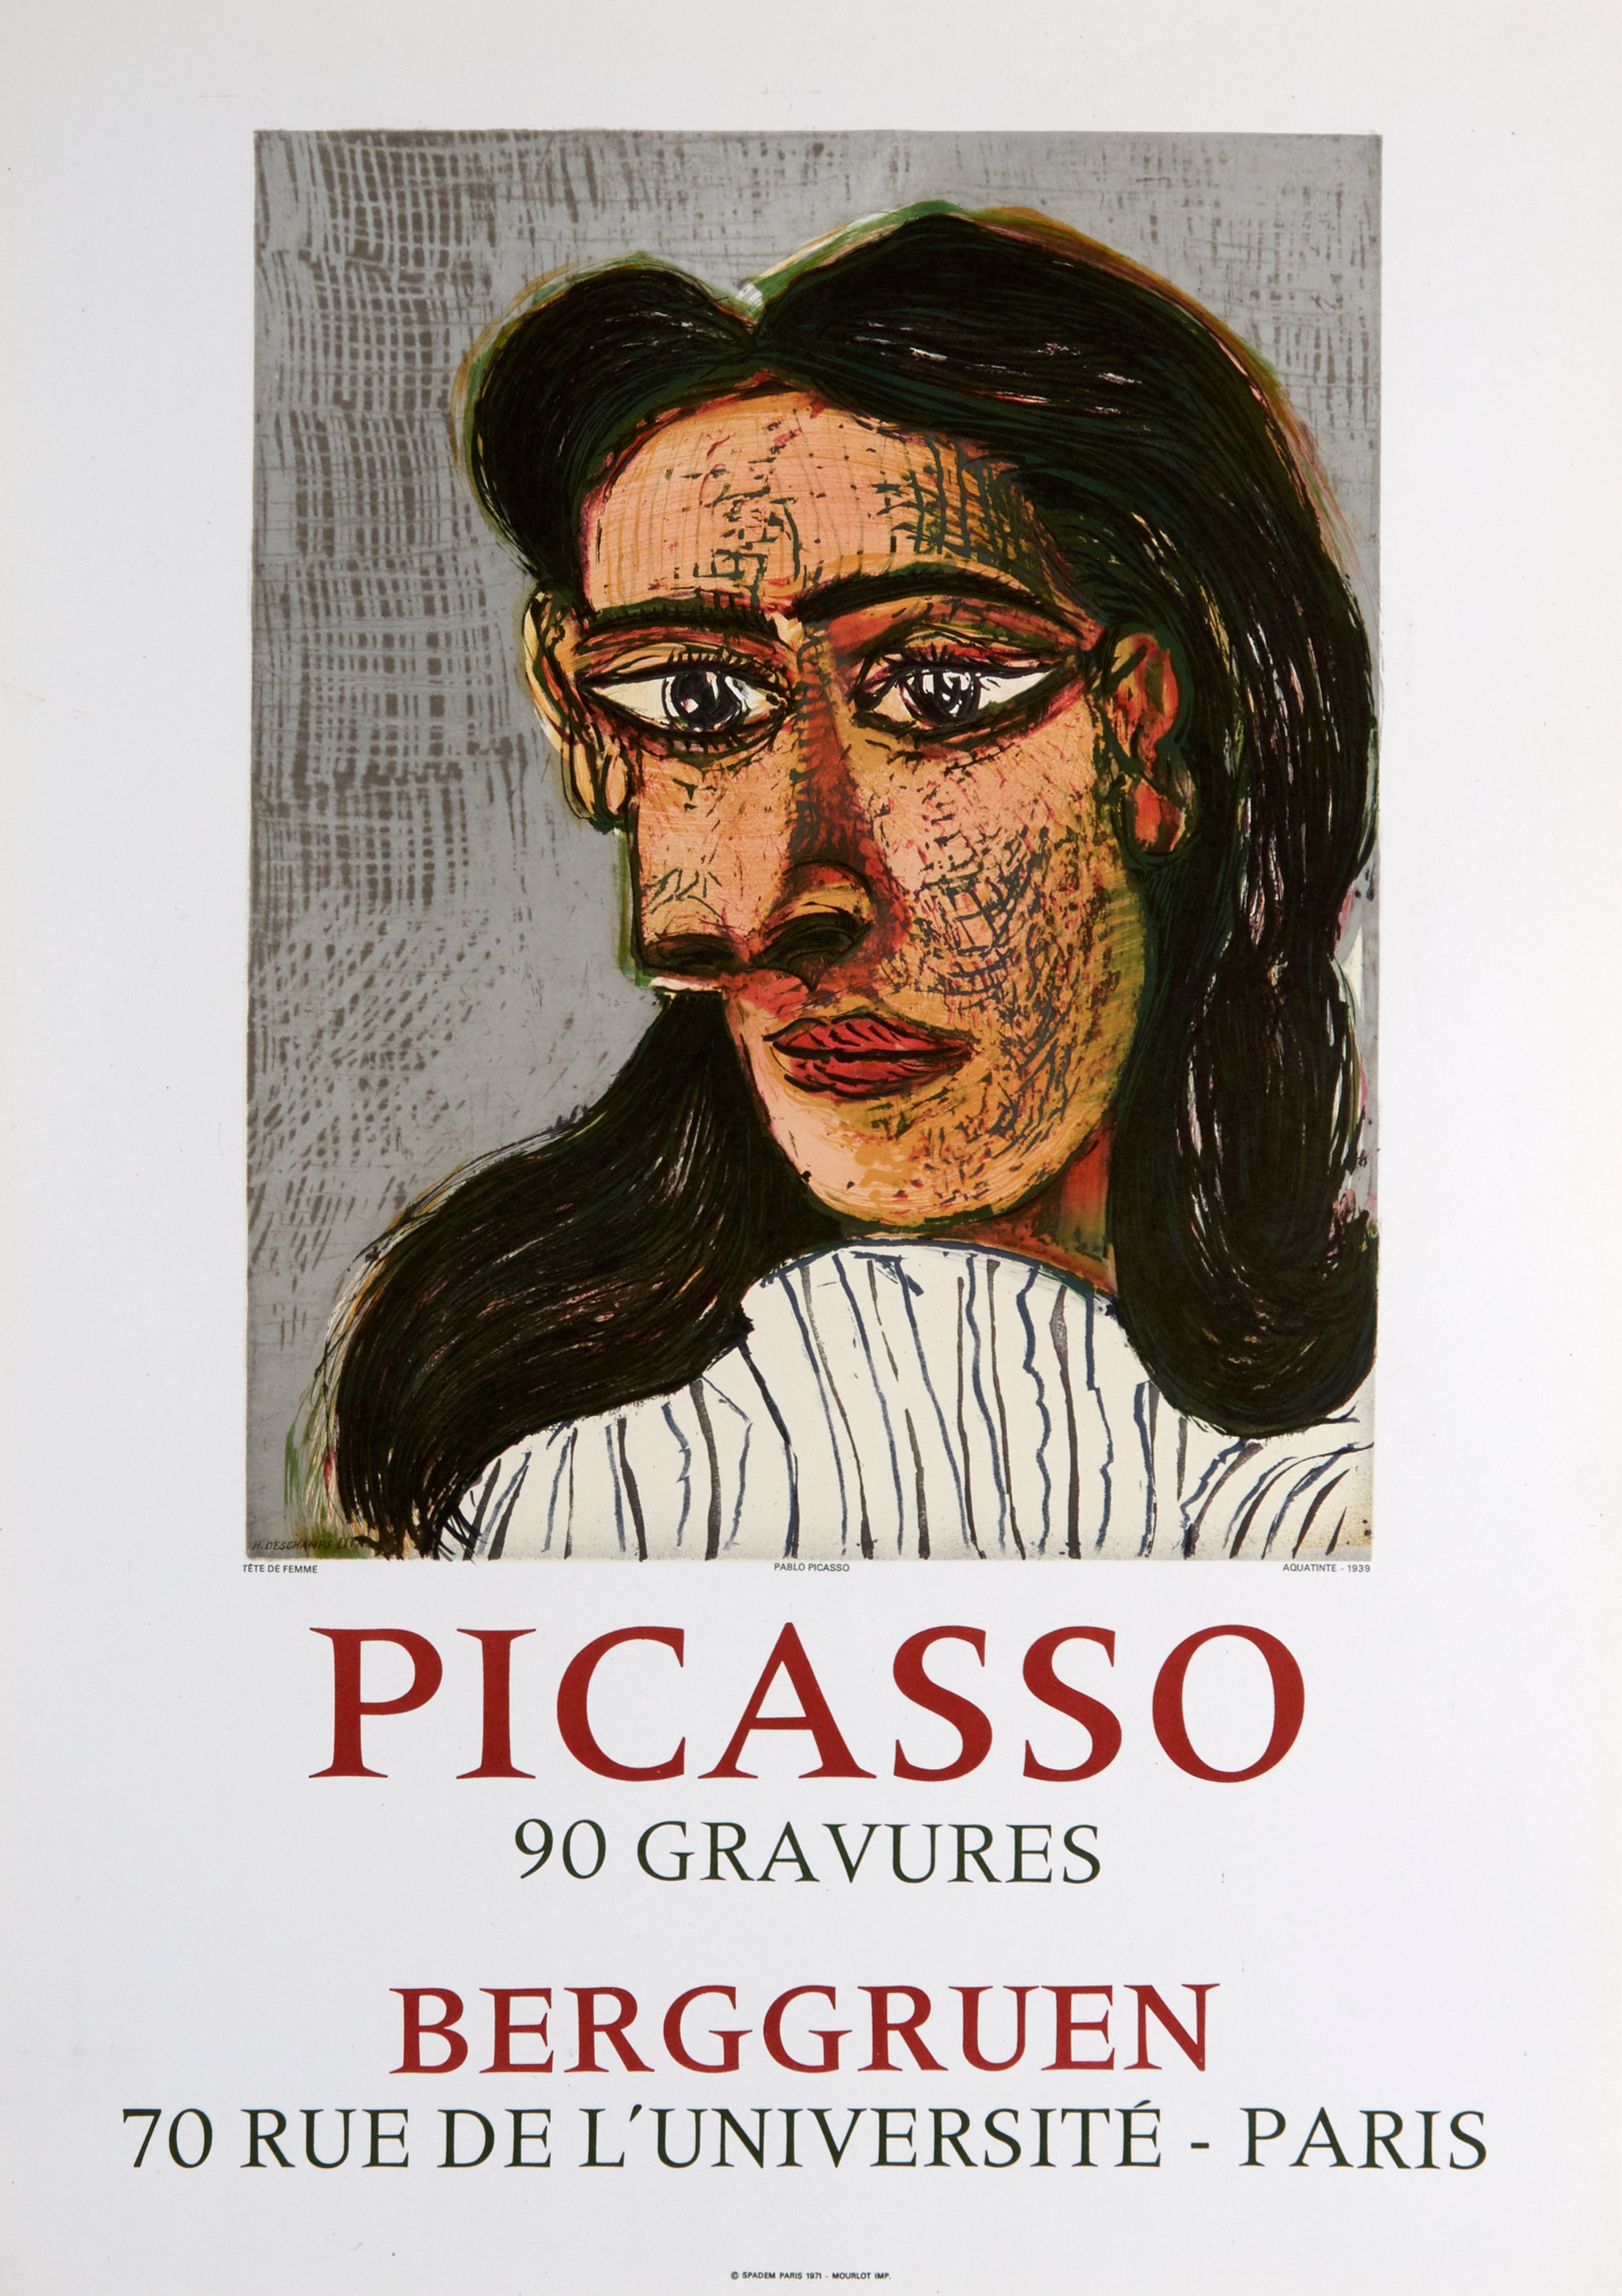 Tete de Femme III - Berggruen - 90 Gravures (after) Pablo Picasso, 1971